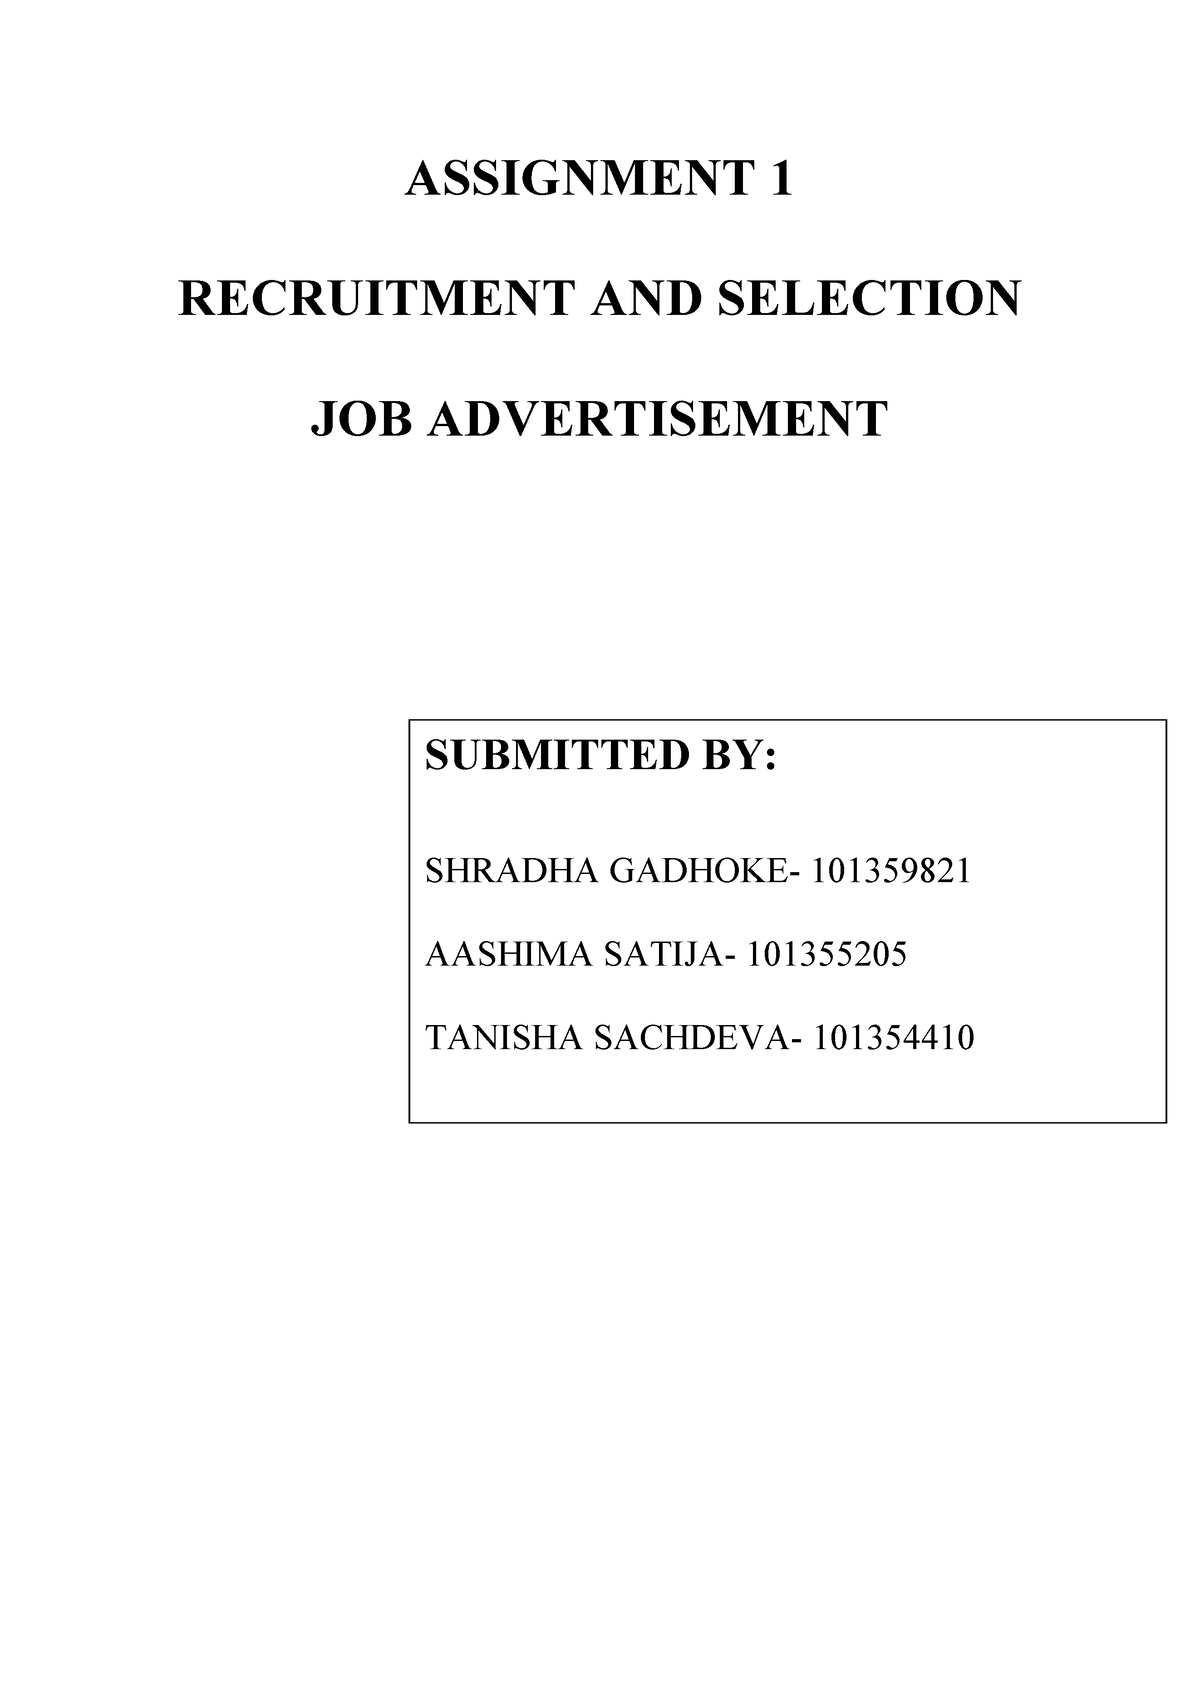 job advertisement assignment